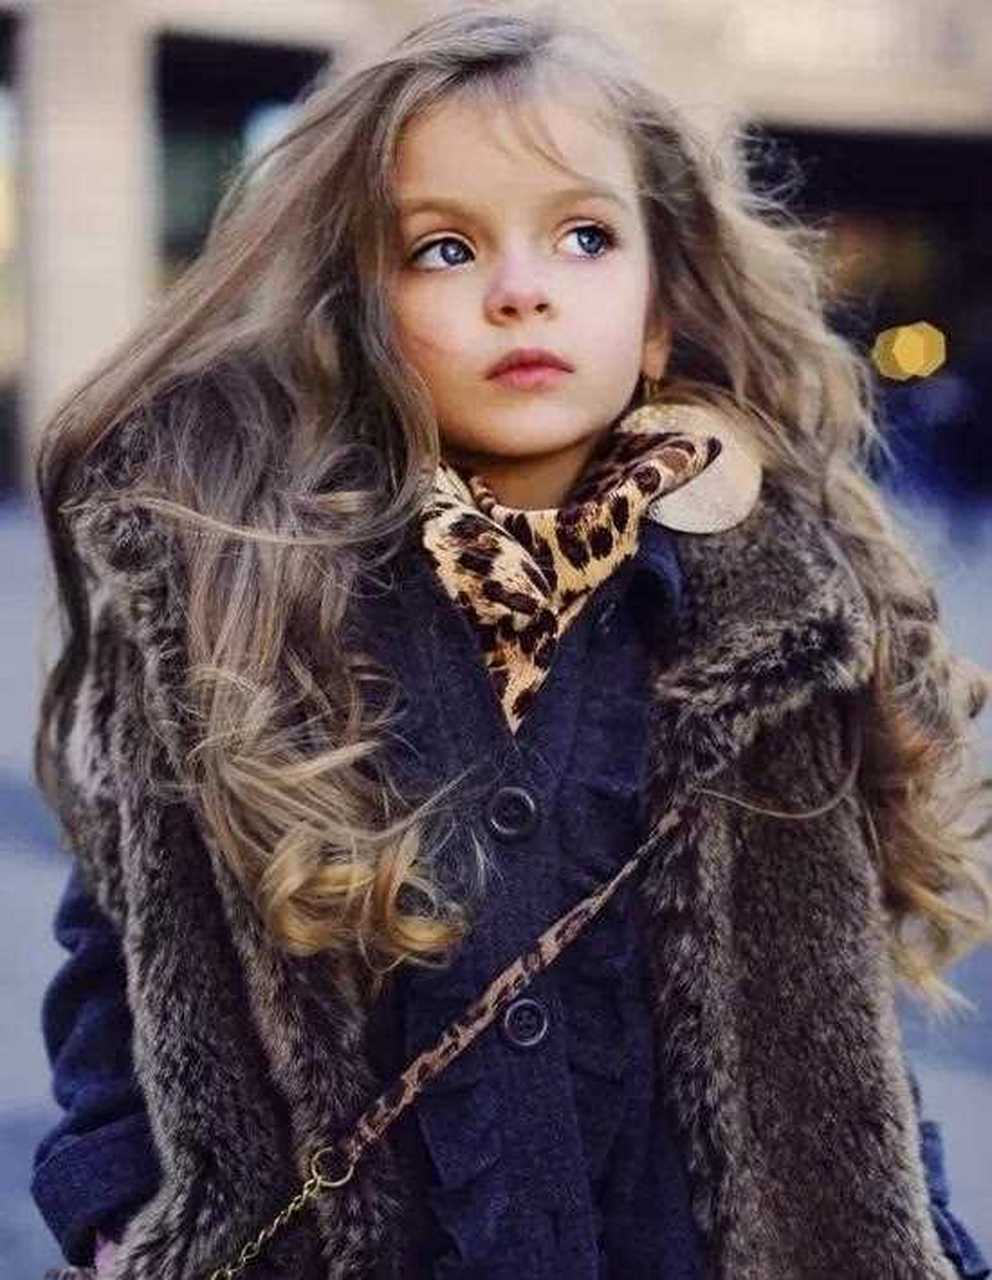 俄罗斯最炽手可热的小童模"米兰"长大了,唯美的洛丽塔就是她本人啦!